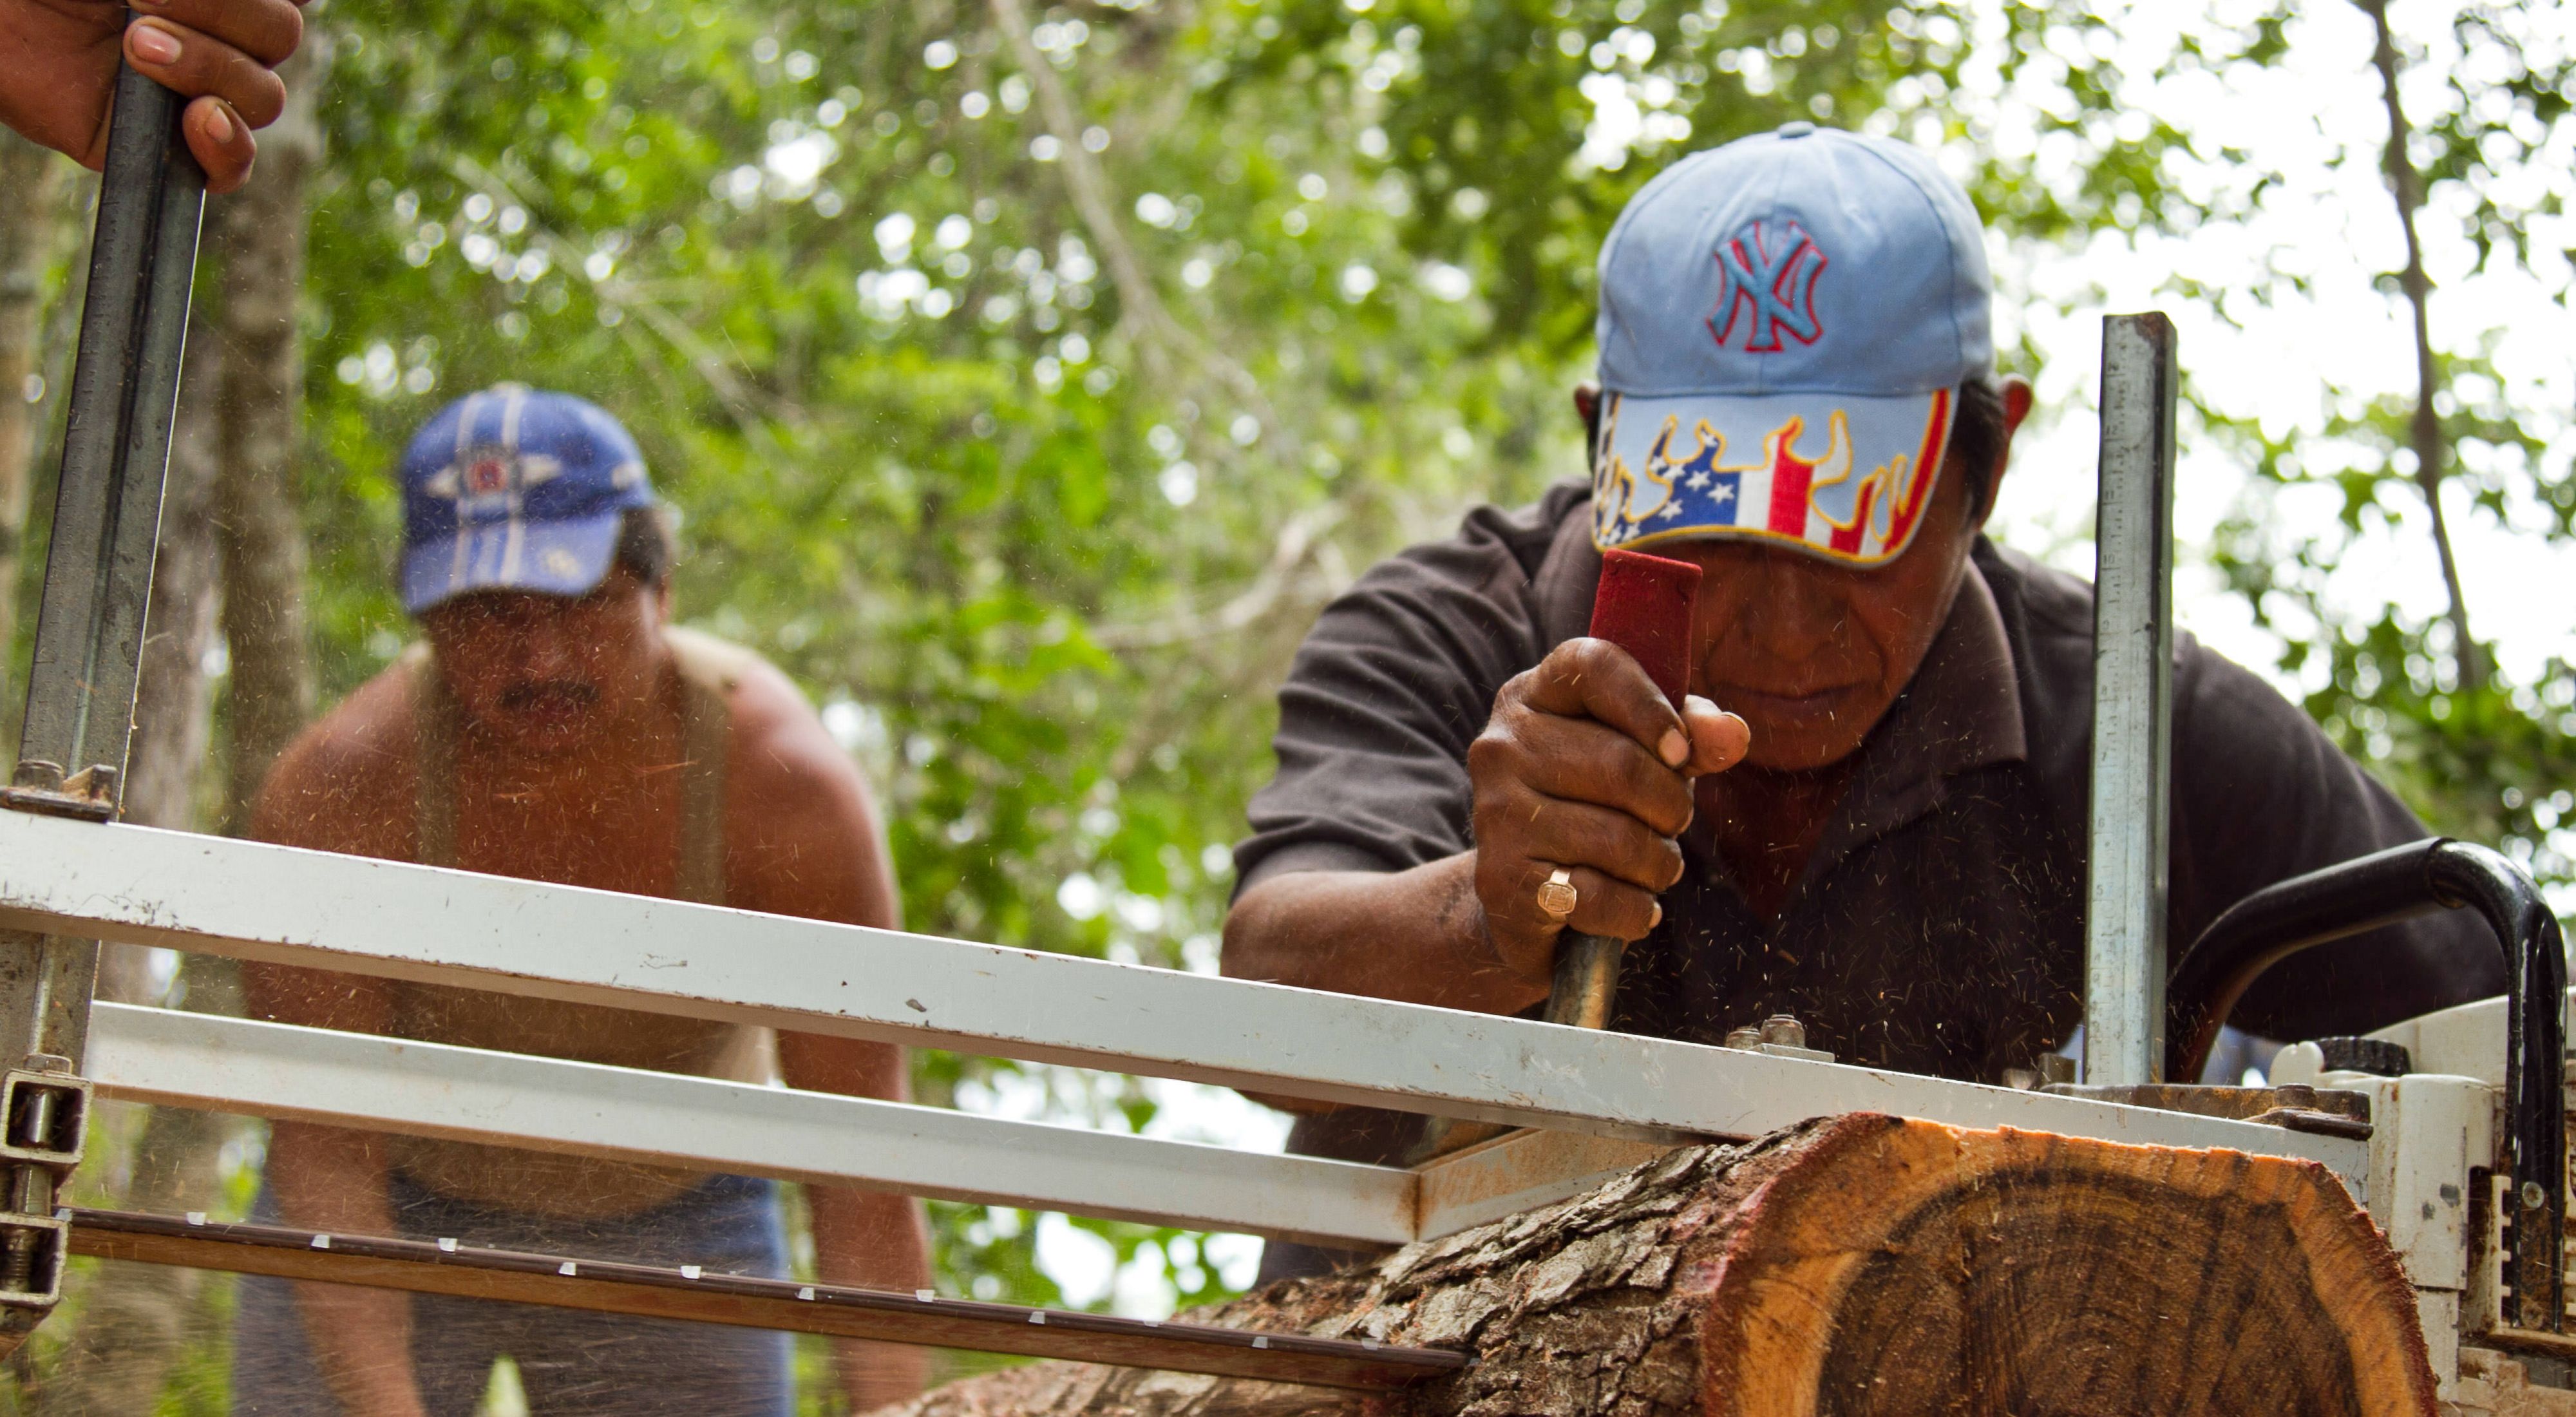 Los hombres del ejido de Bethania, un territorio de propiedad comunal, usan un aserradero portátil para cortar tablas de madera de los árboles que cosechan. 